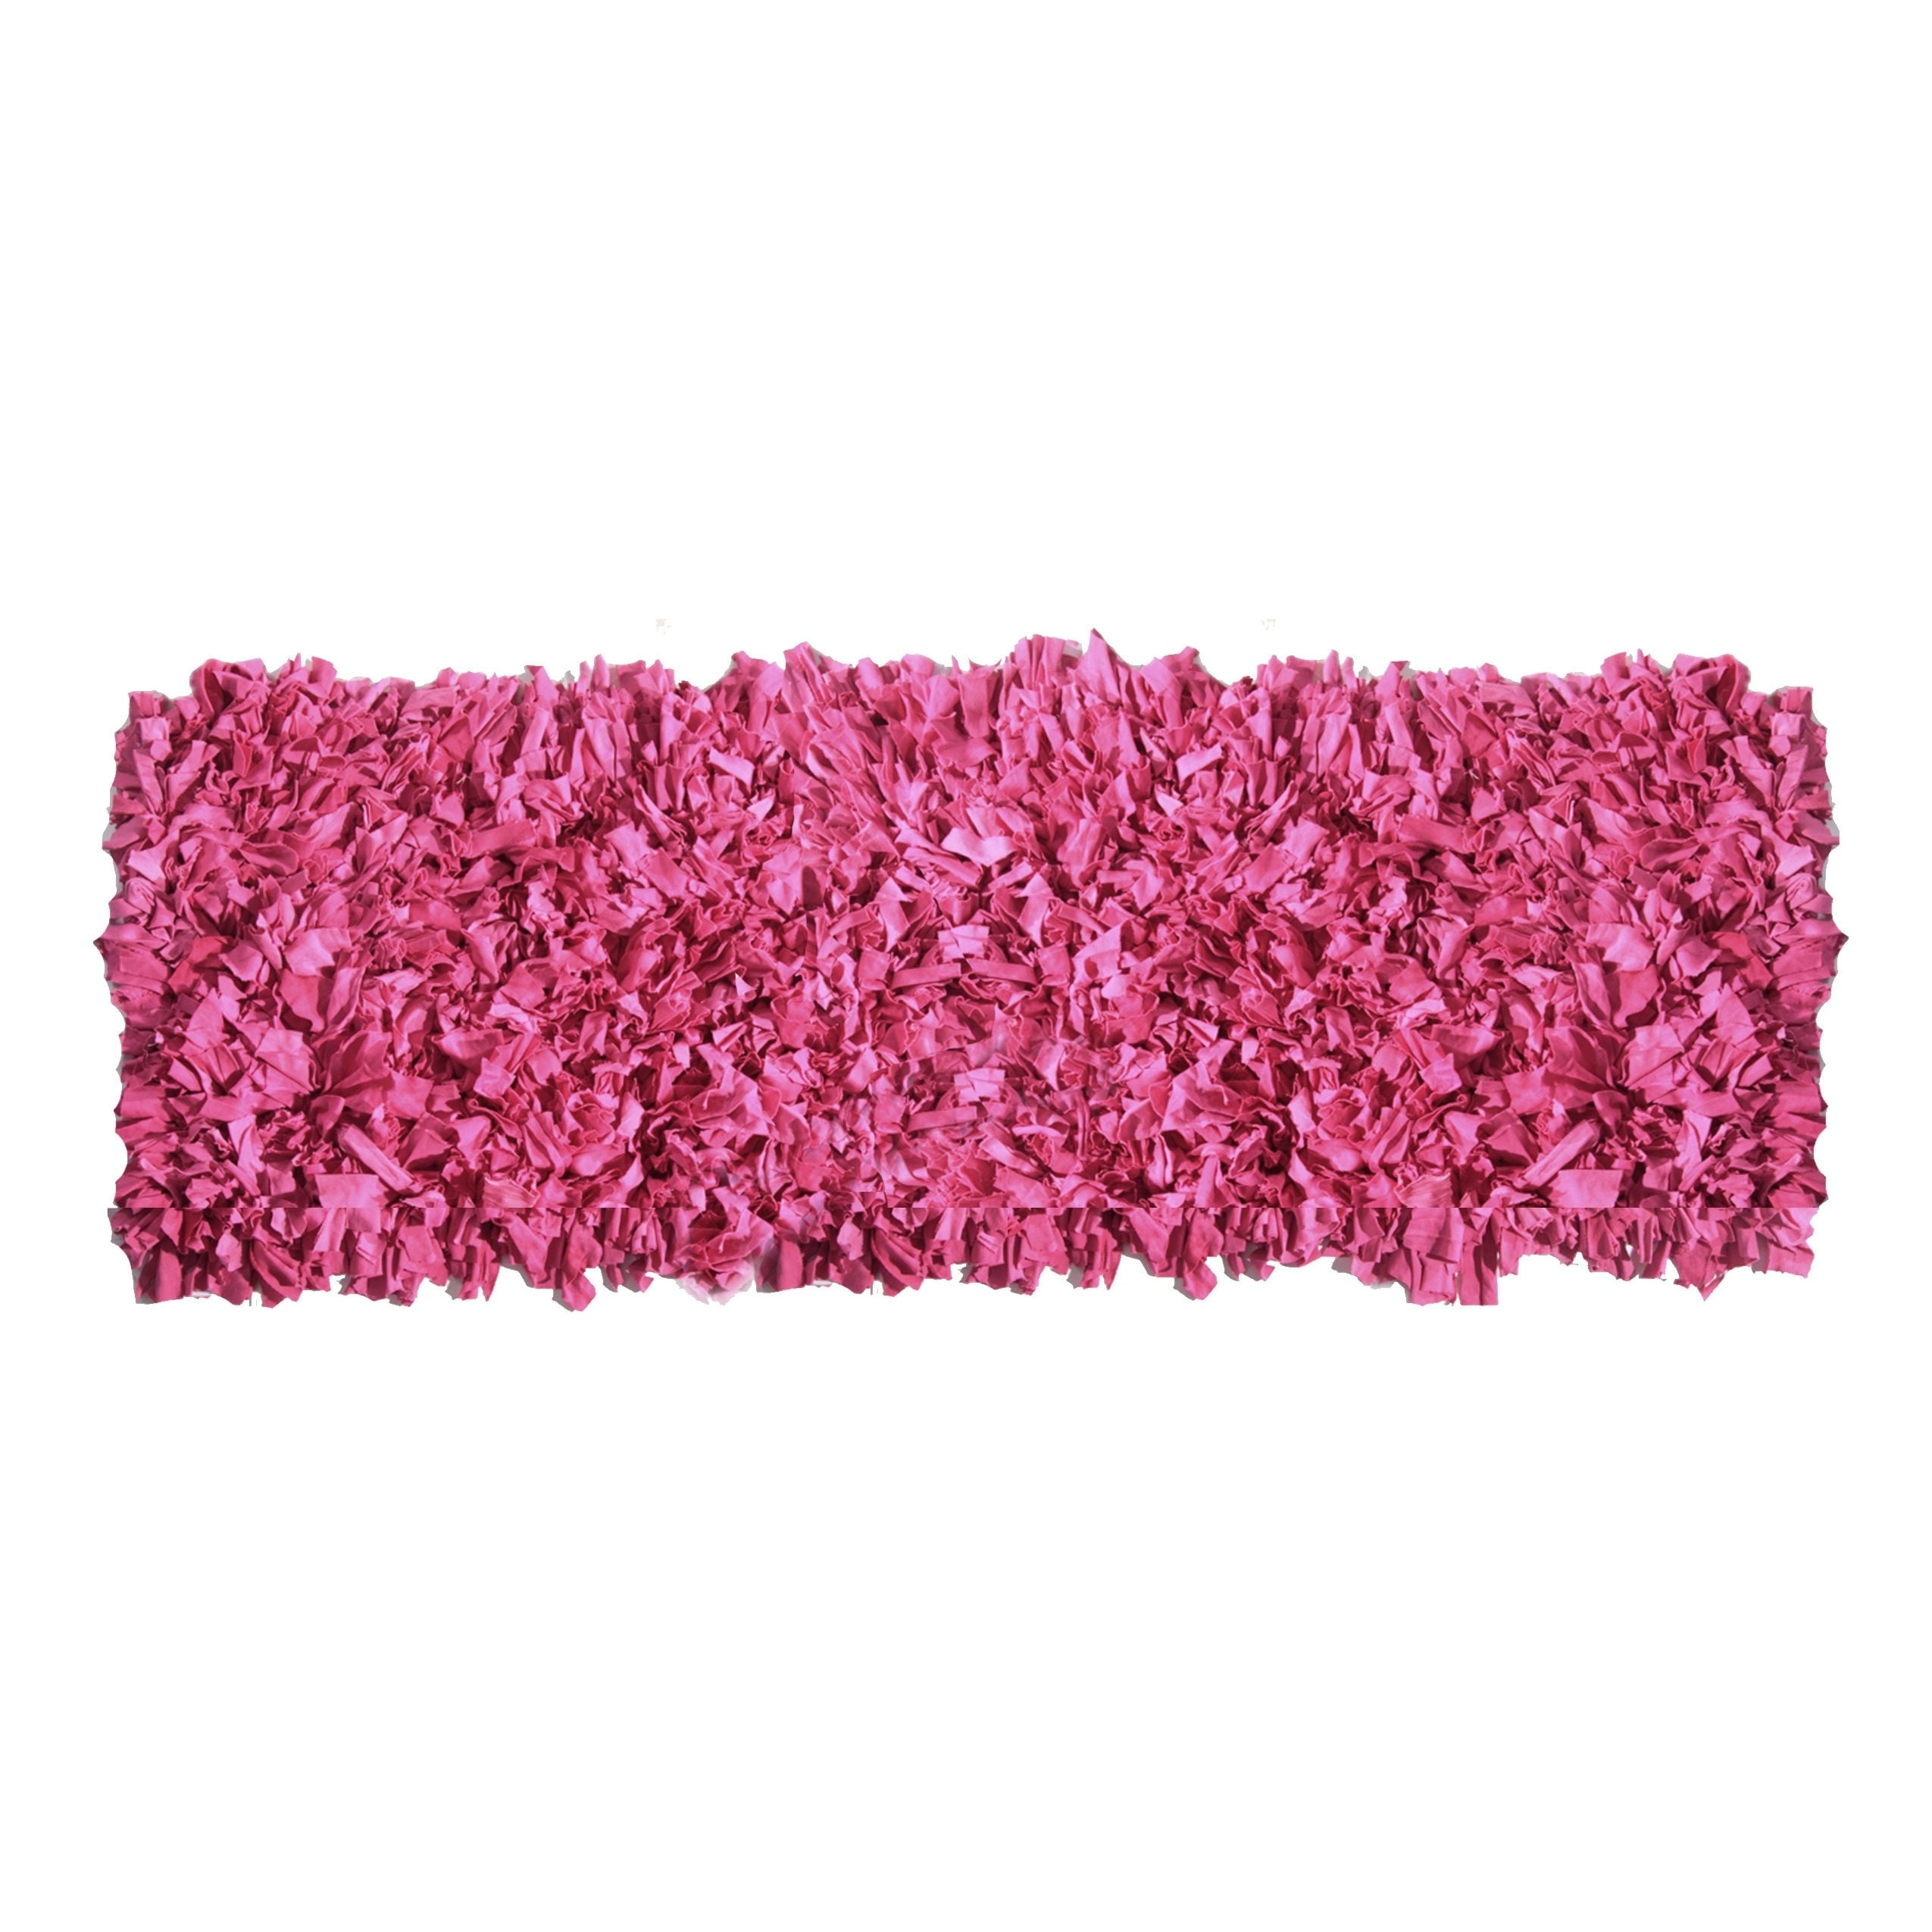 Hand woven Jersey Pink Cotton Shag Runner Rug (2 X 6)